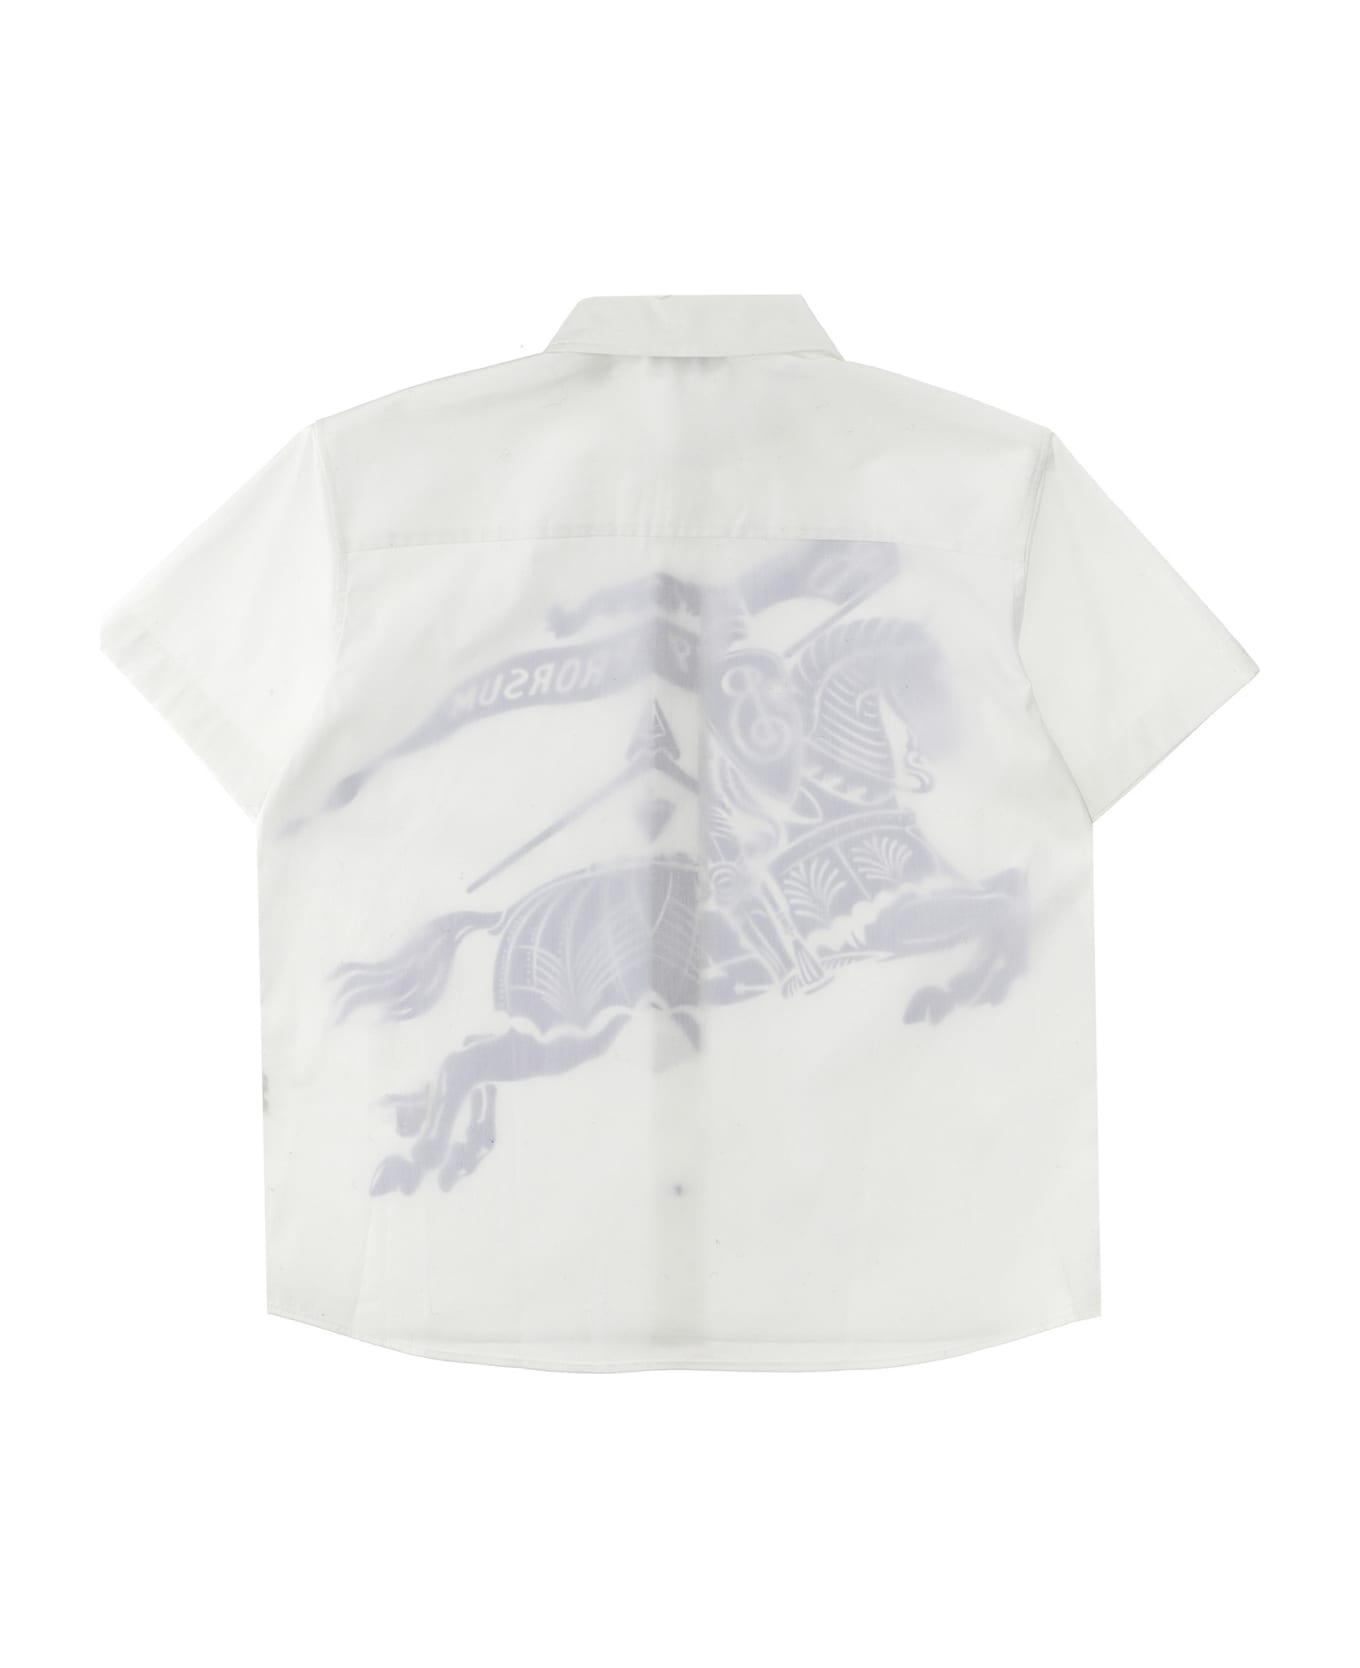 Burberry 'devon' Shirt - White シャツ